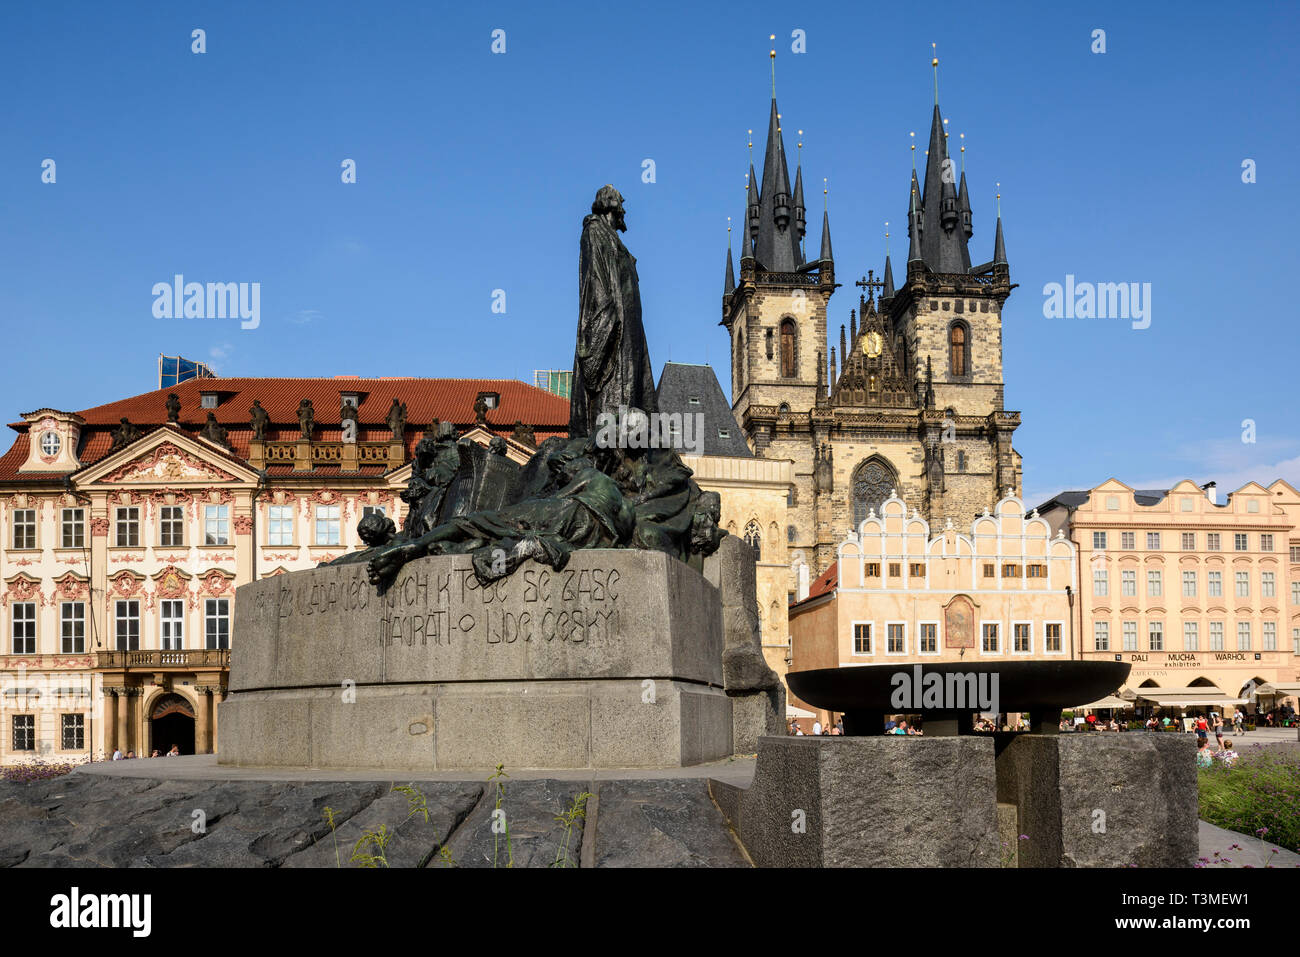 Prag. Der Tschechischen Republik. Statue von Jan Hus & 14. Jahrhundert Kirche der Muttergottes vor dem Teyn, Old Town Square. Stockfoto